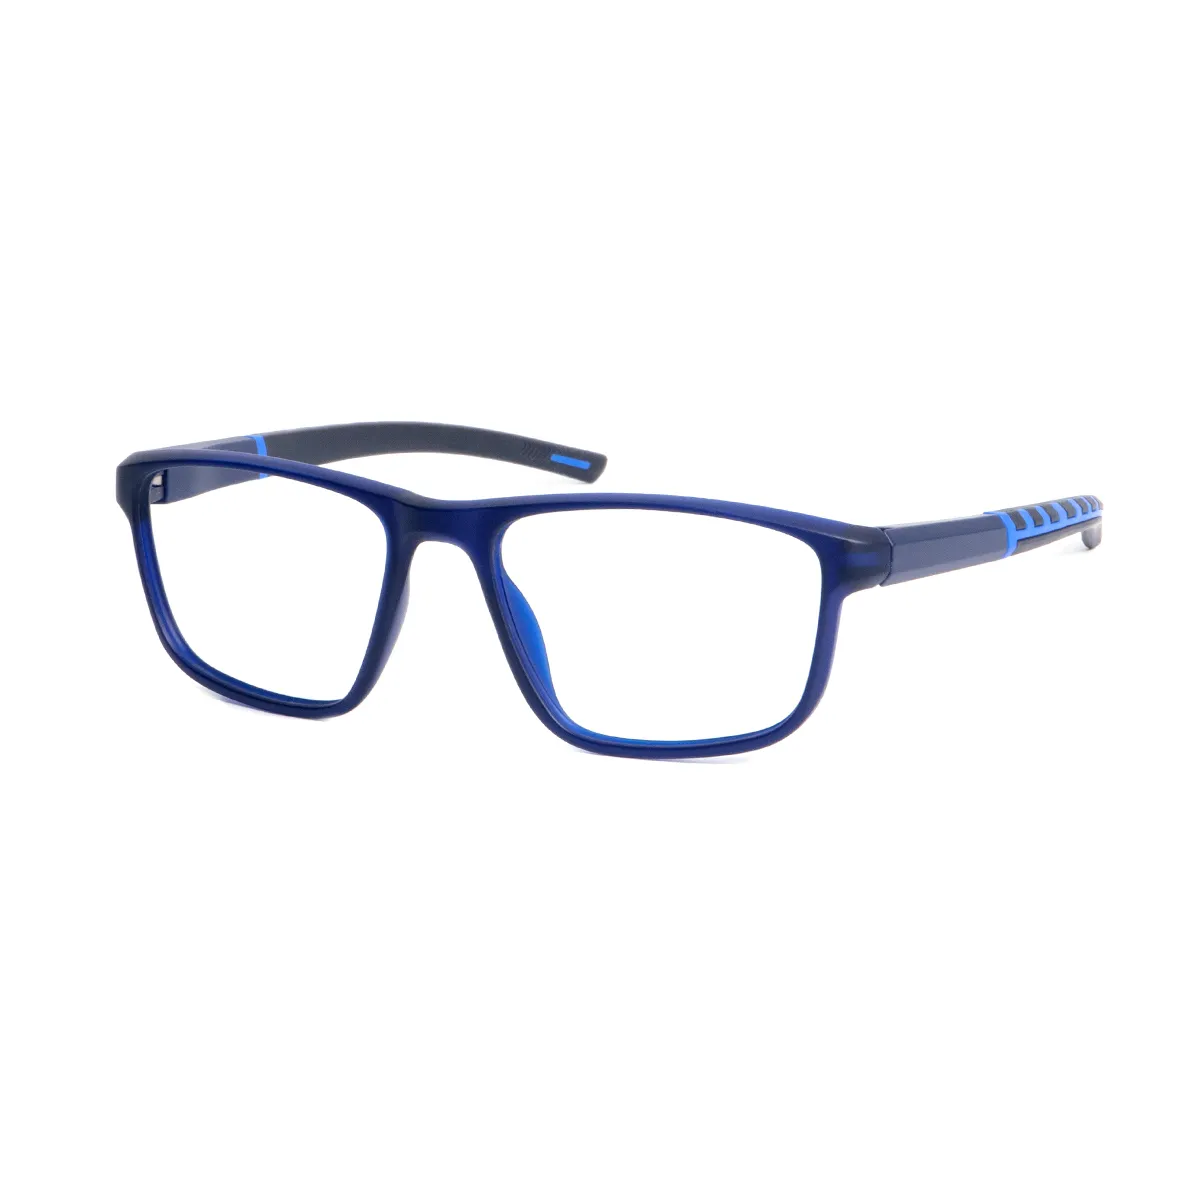 Kendall - Square Blue Glasses for Men